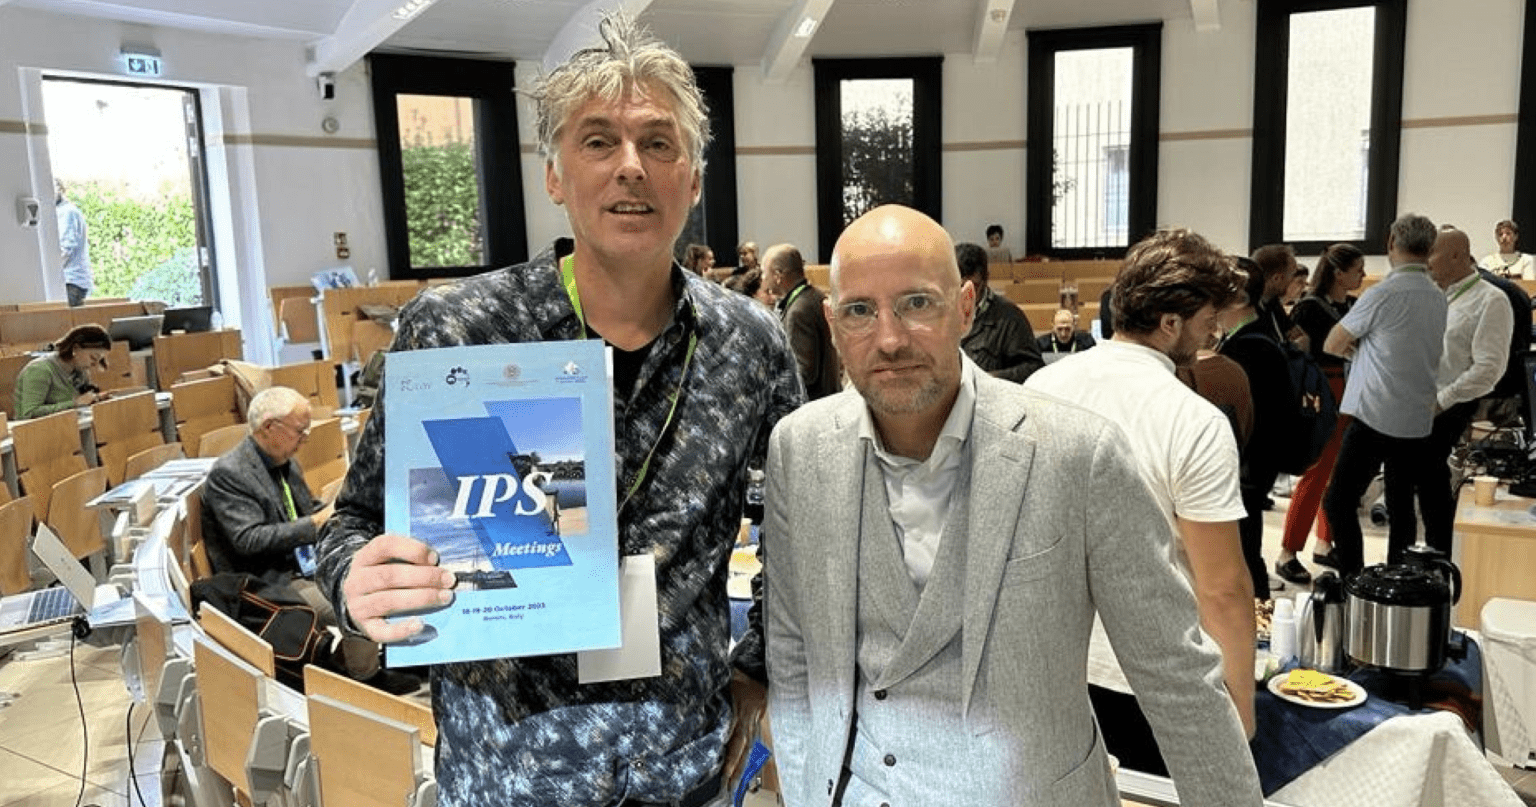 Op de foto: Cris Bergmans en Jan Markerink tijdens een congres over het belang van IPS in Rimini, Italië